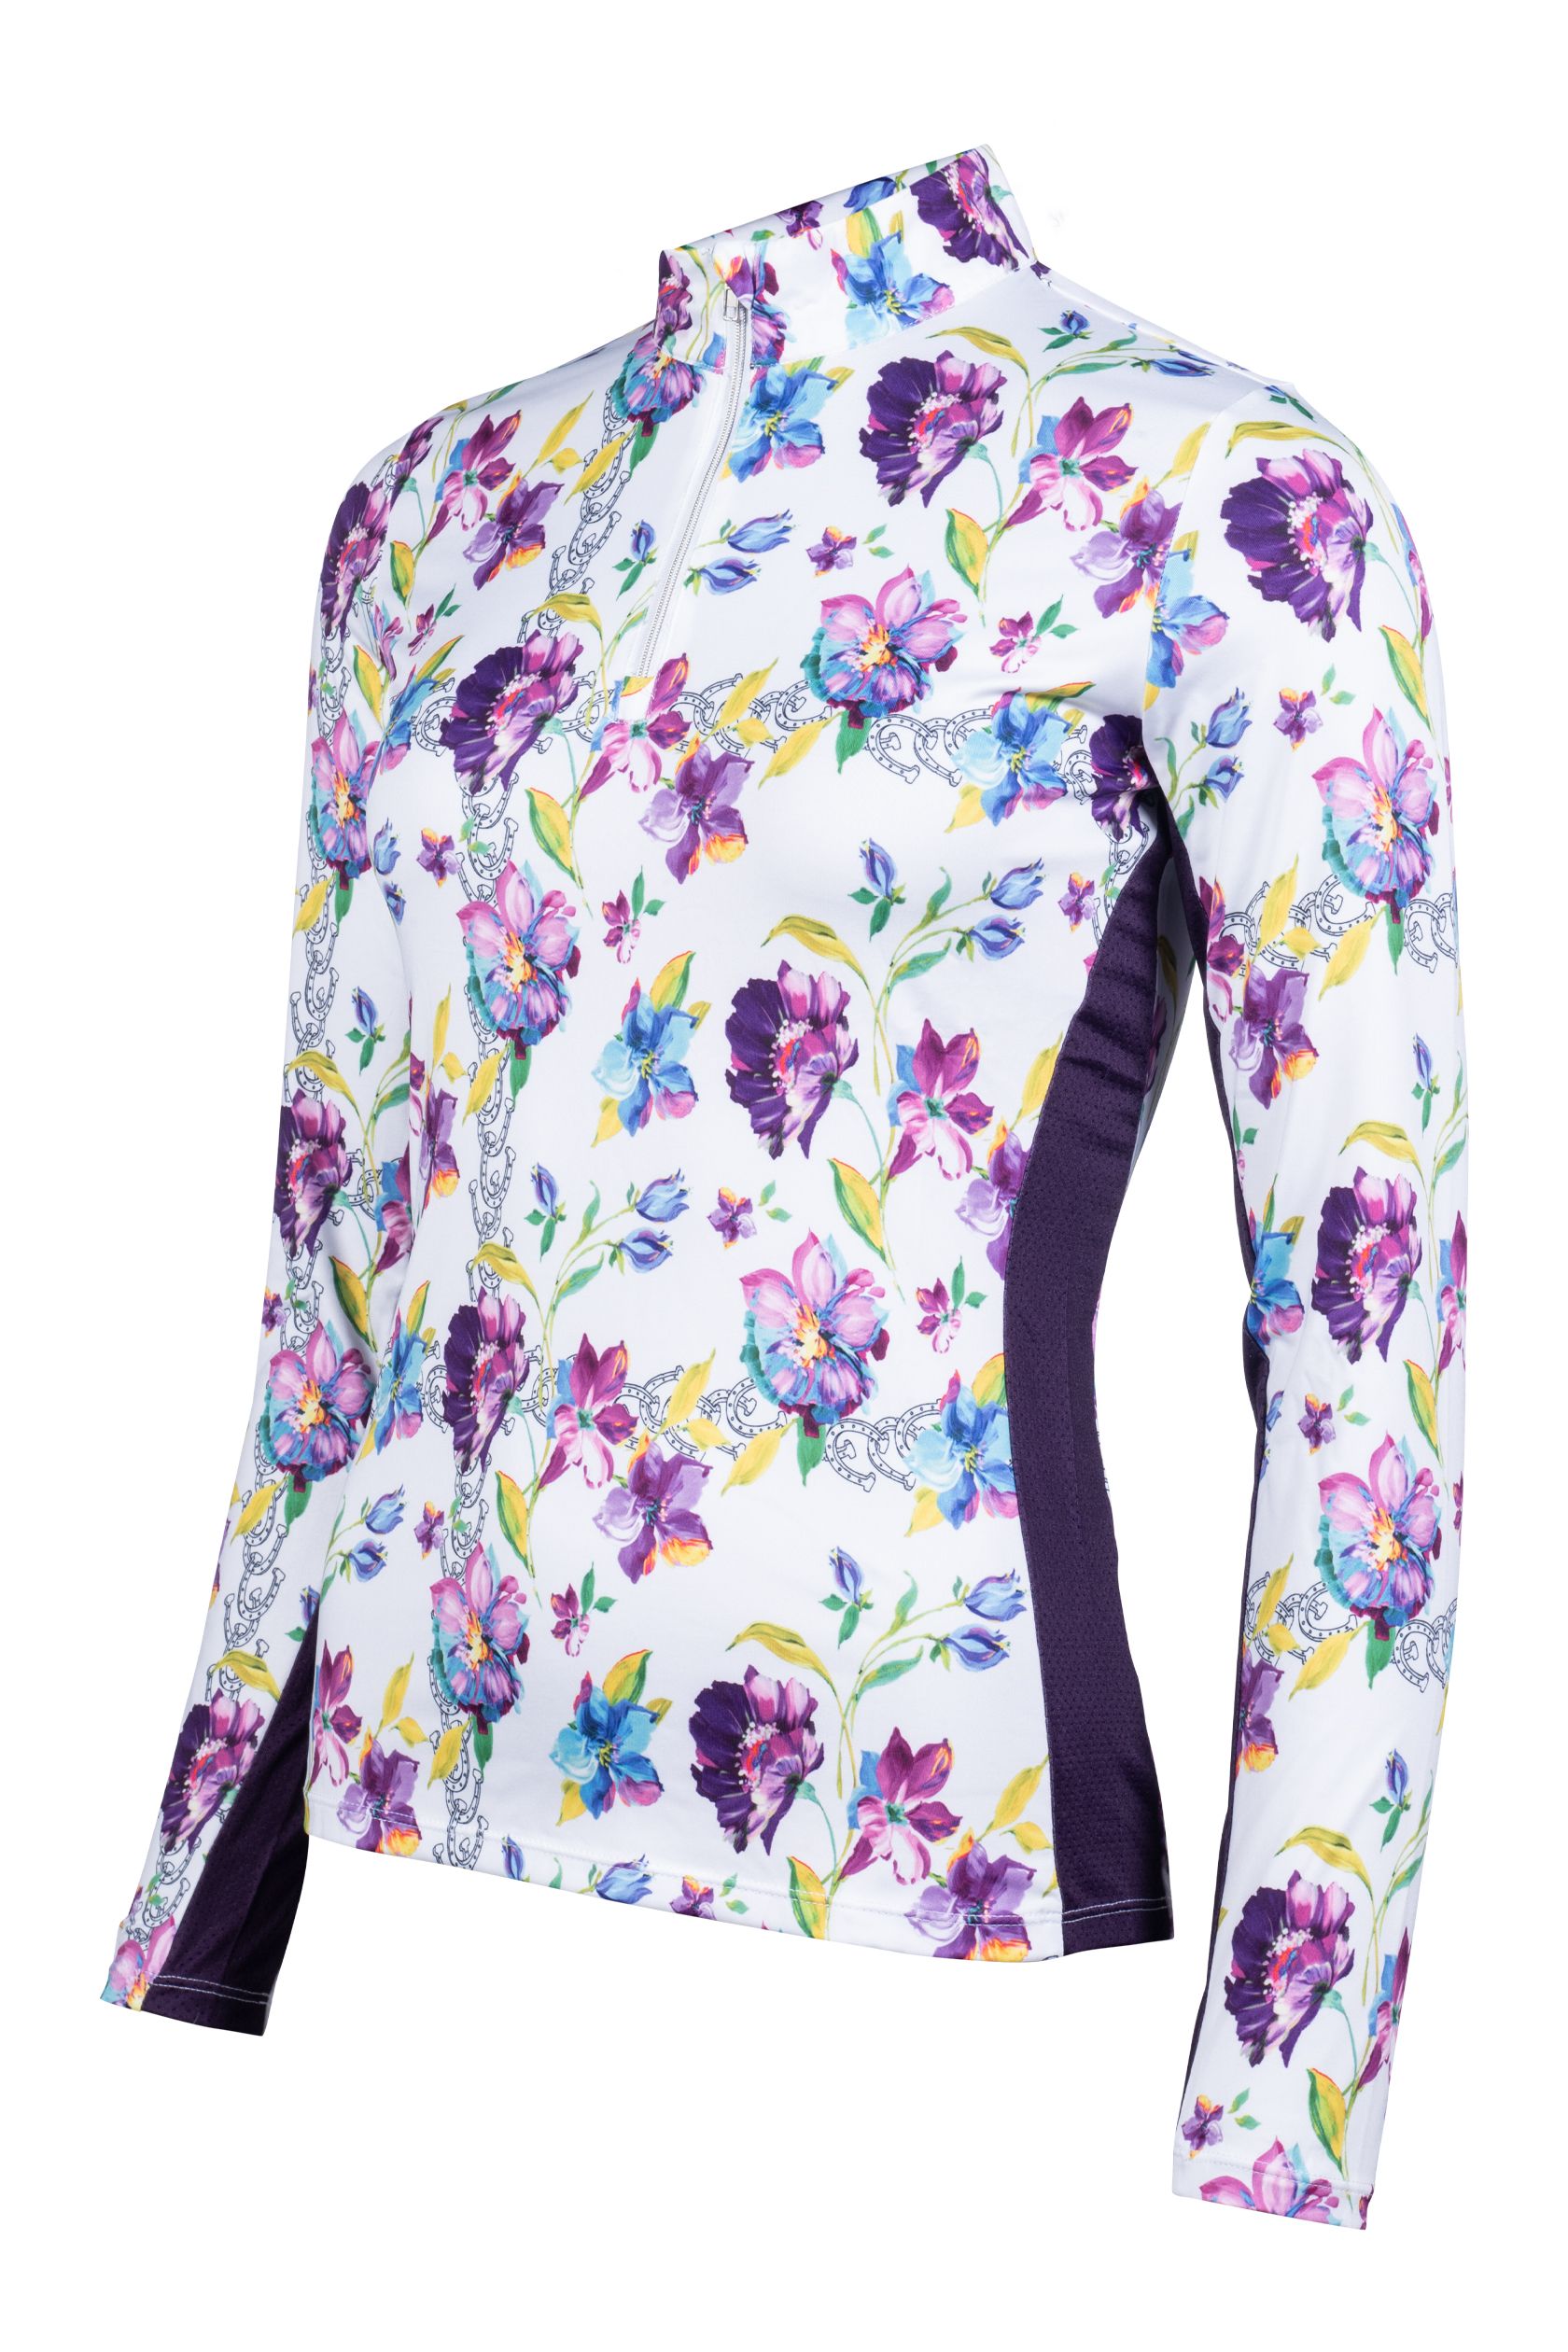 HKM HKM Damen Funktionsshirt -Lilac Flower- - weiß/lila - M - 2